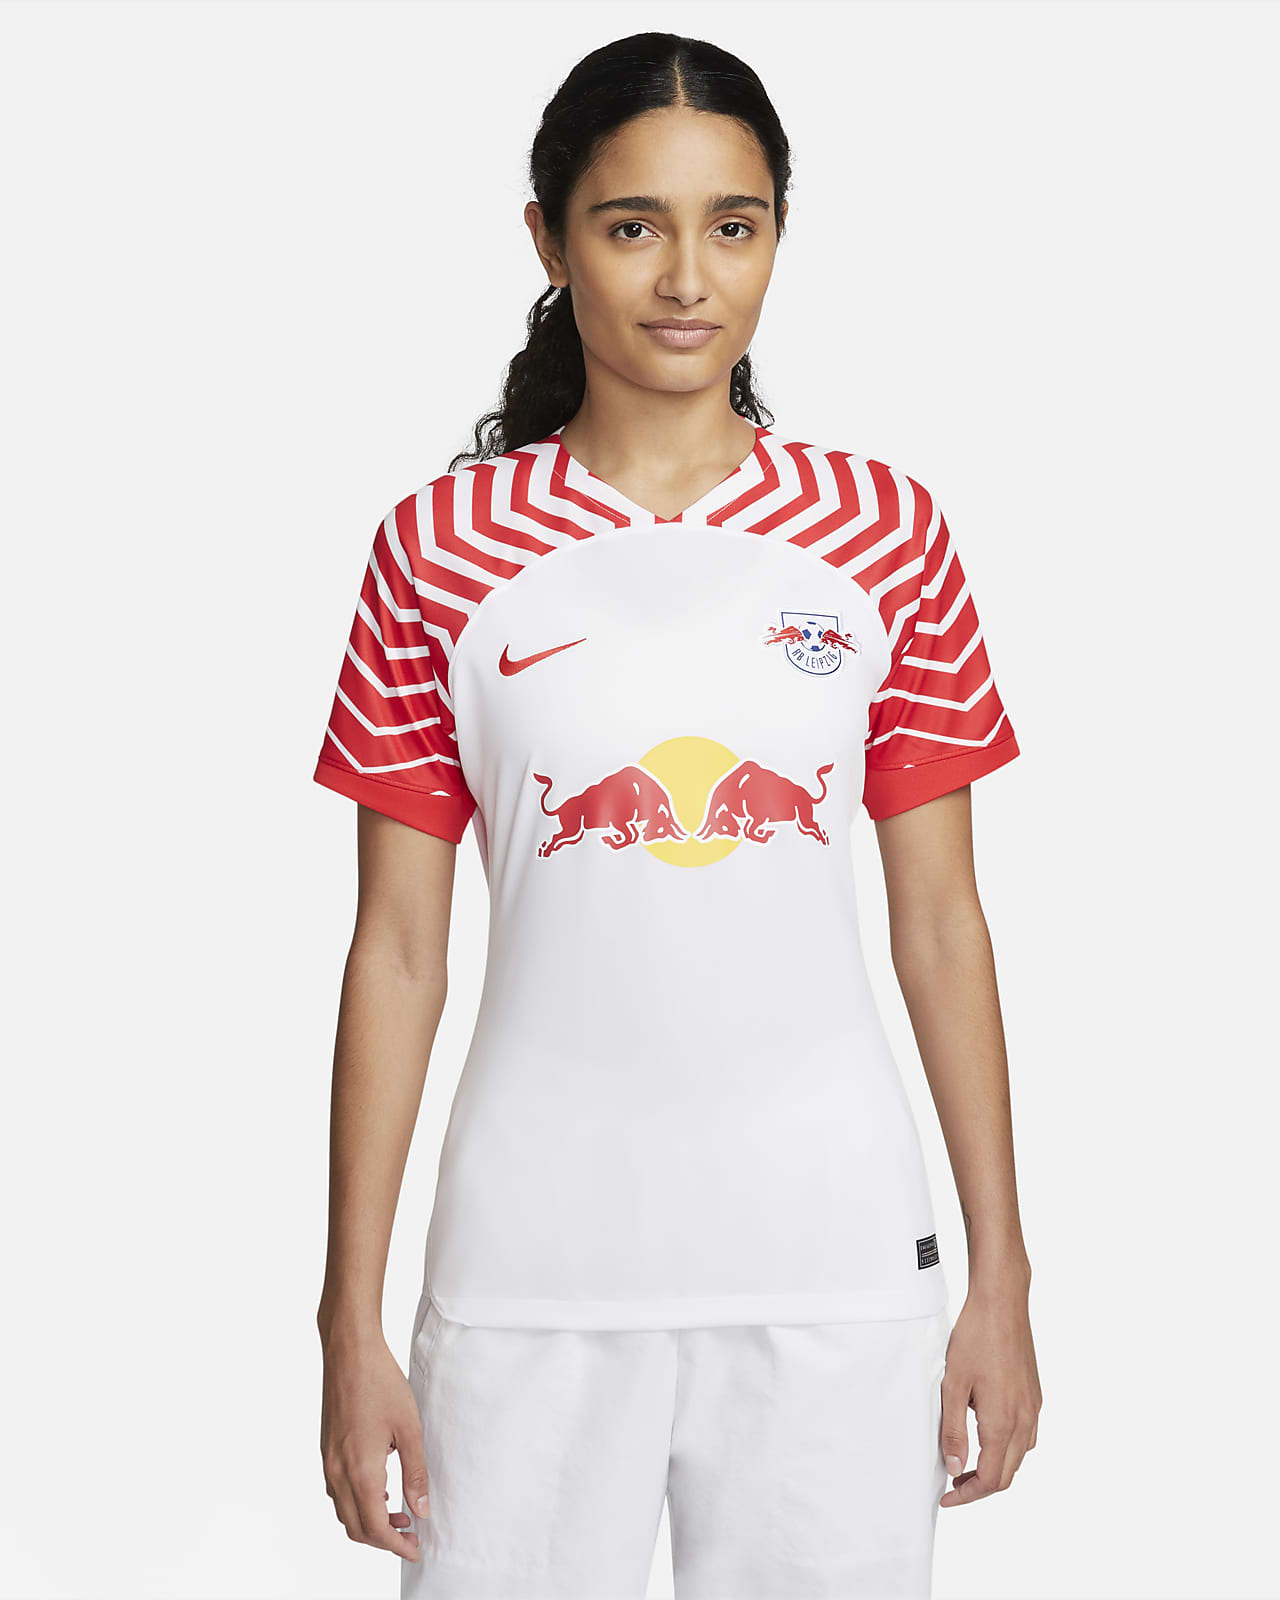 RB Leipzig 2023/24 Stadium Thuis Nike Dri-FIT voetbalshirt voor dames